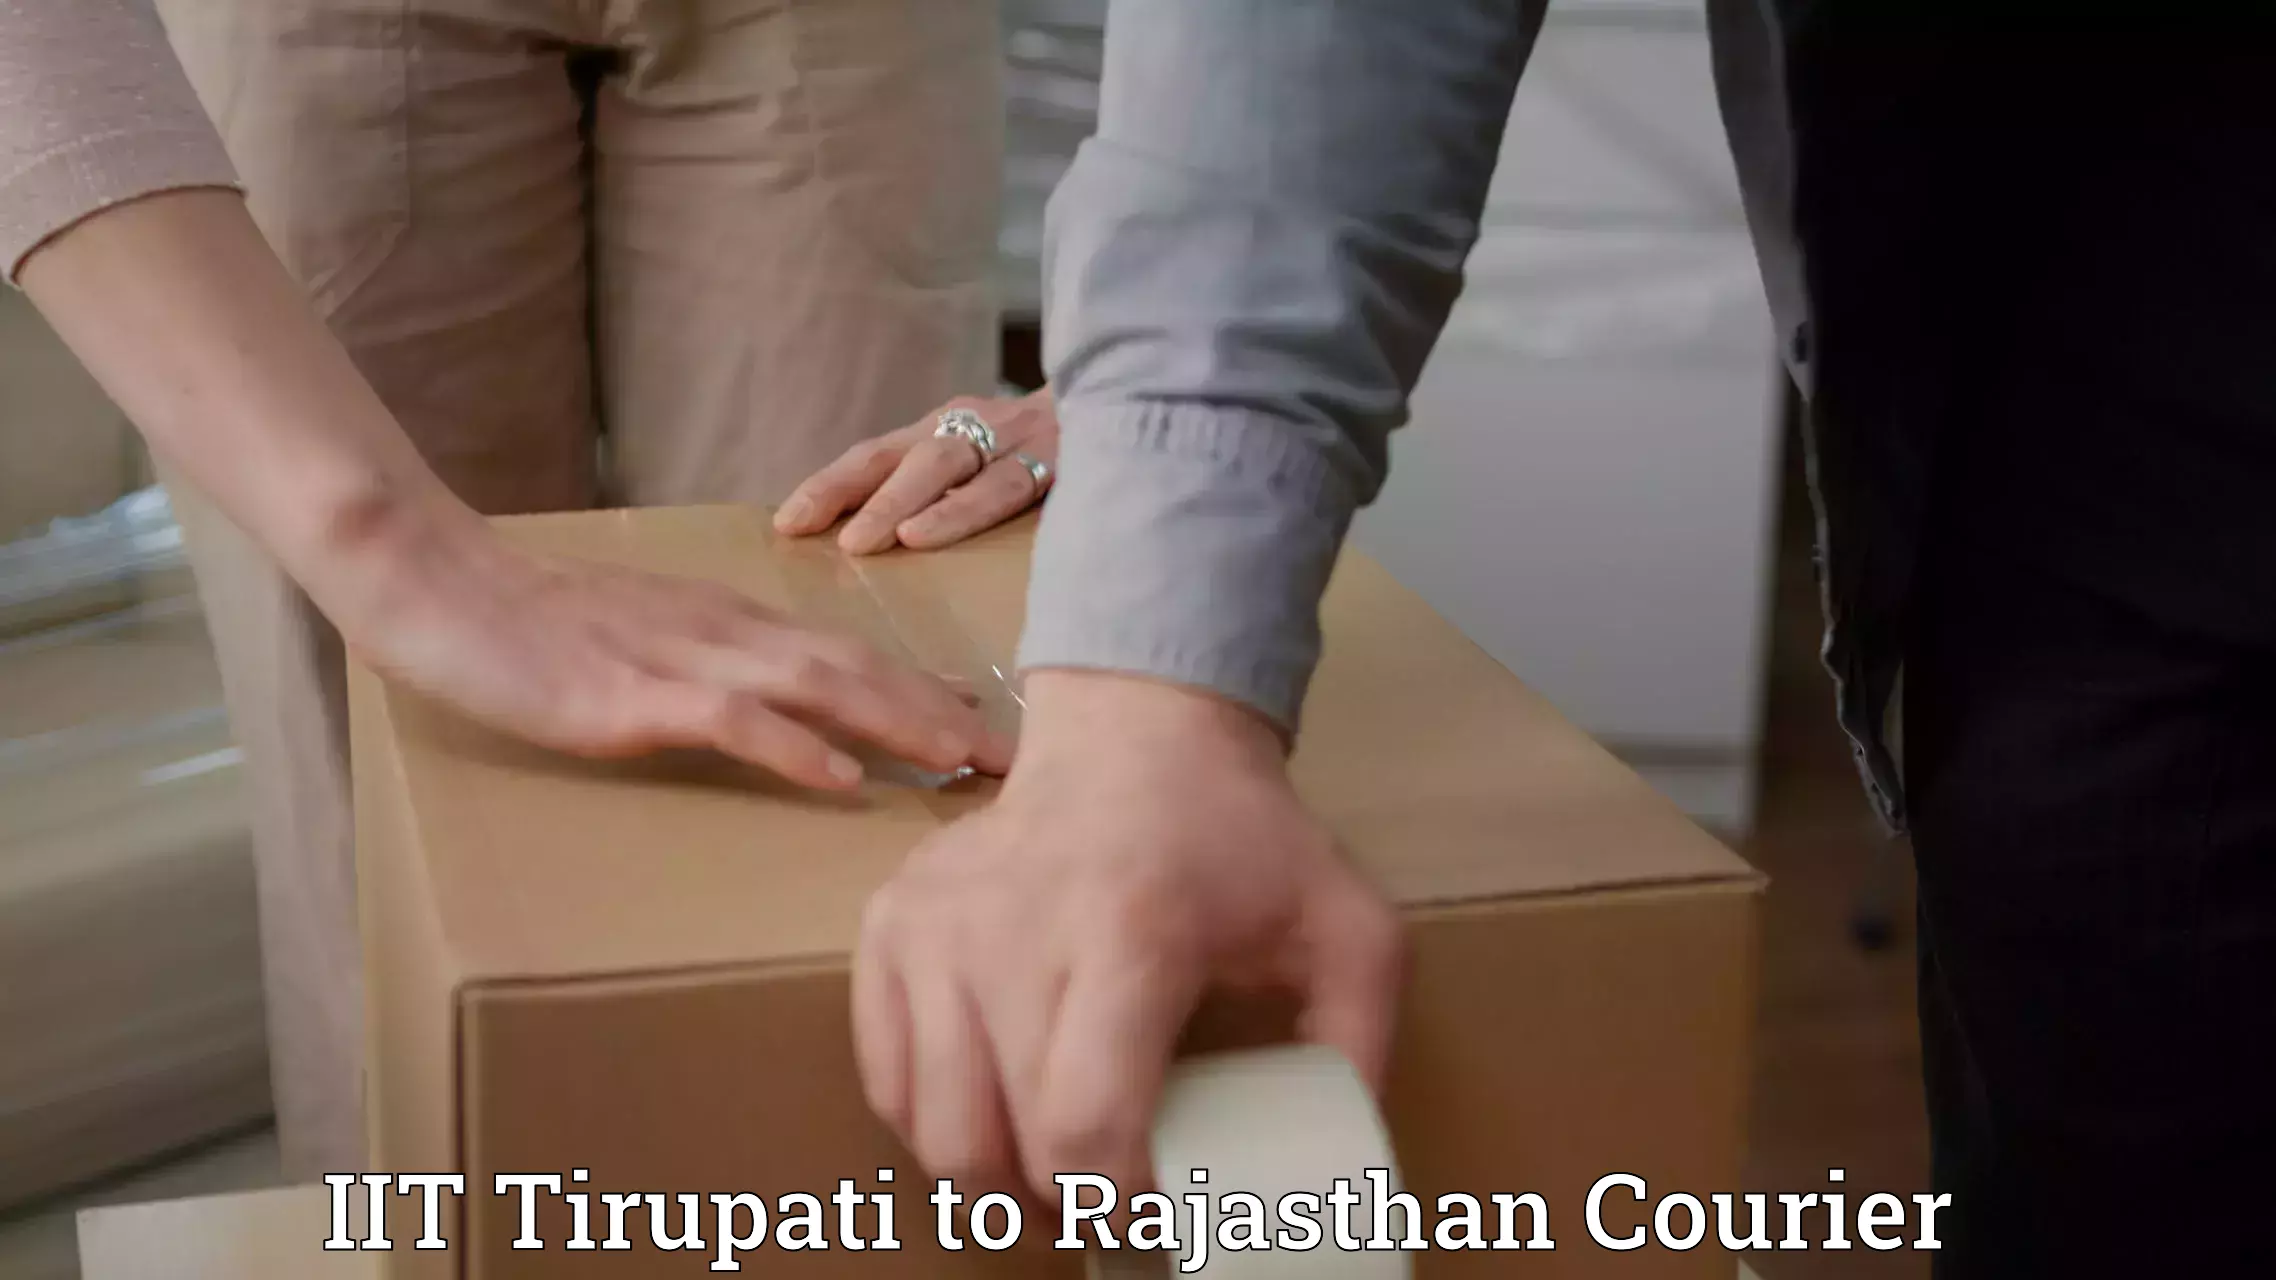 Affordable parcel service IIT Tirupati to Nainwa